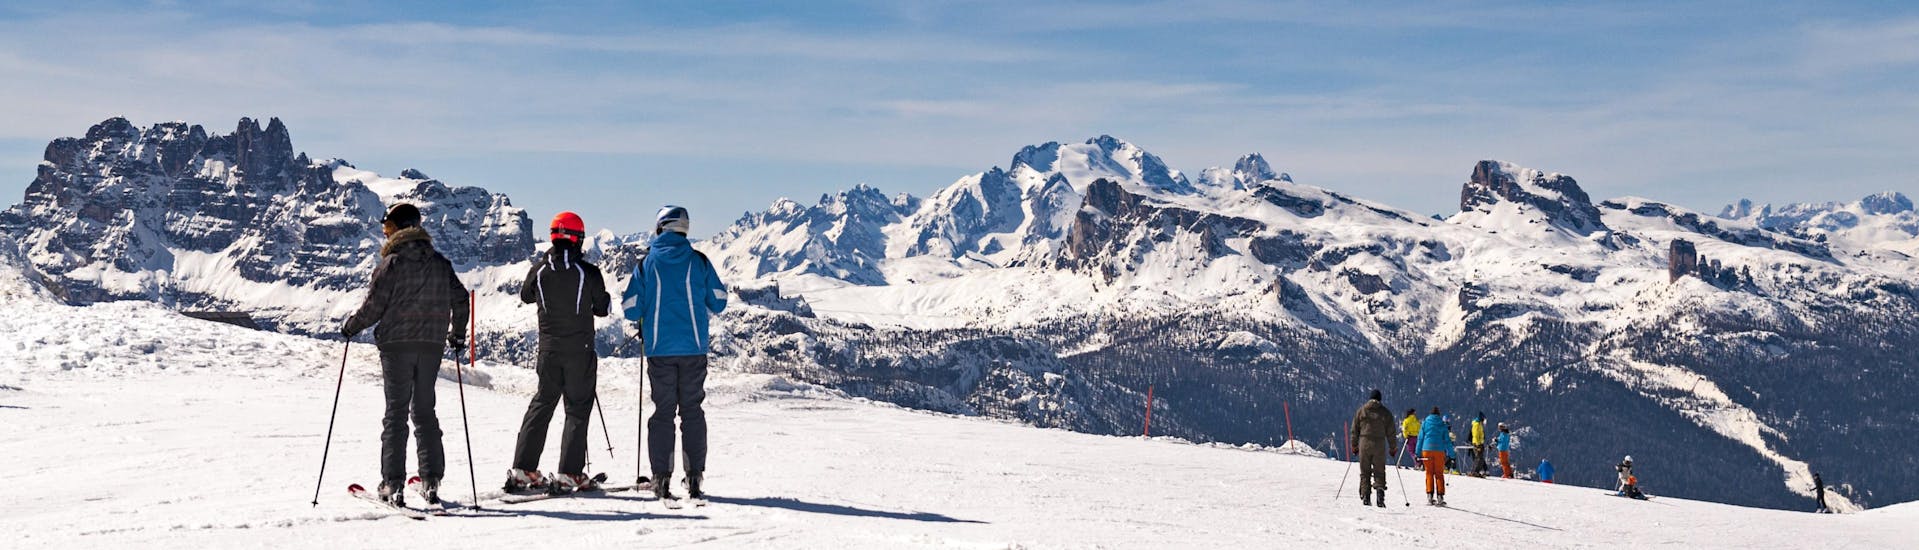 Vista panoramica delle Dolomiti con sciatori che partecipano a lezioni di sci dalle scuole di sci dell'area sciistica Cortina.